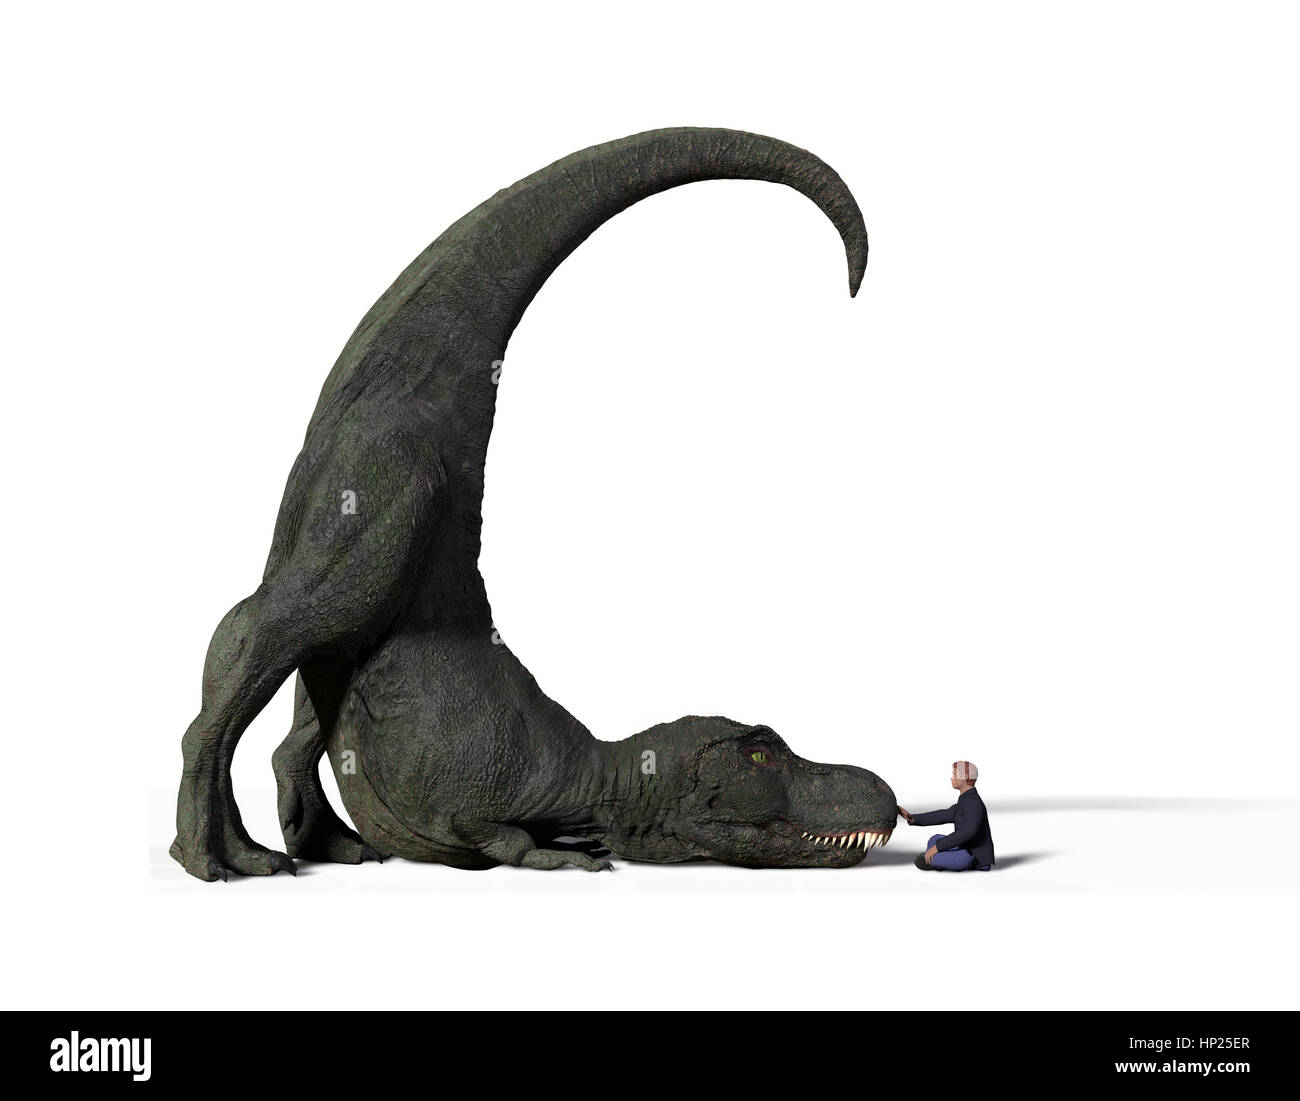 Comparaison de la taille d'un dinosaure Tyrannosaurus rex adultes de la période jurassique et un humain de 1,8 m (Homo sapiens), 3d illustration Banque D'Images